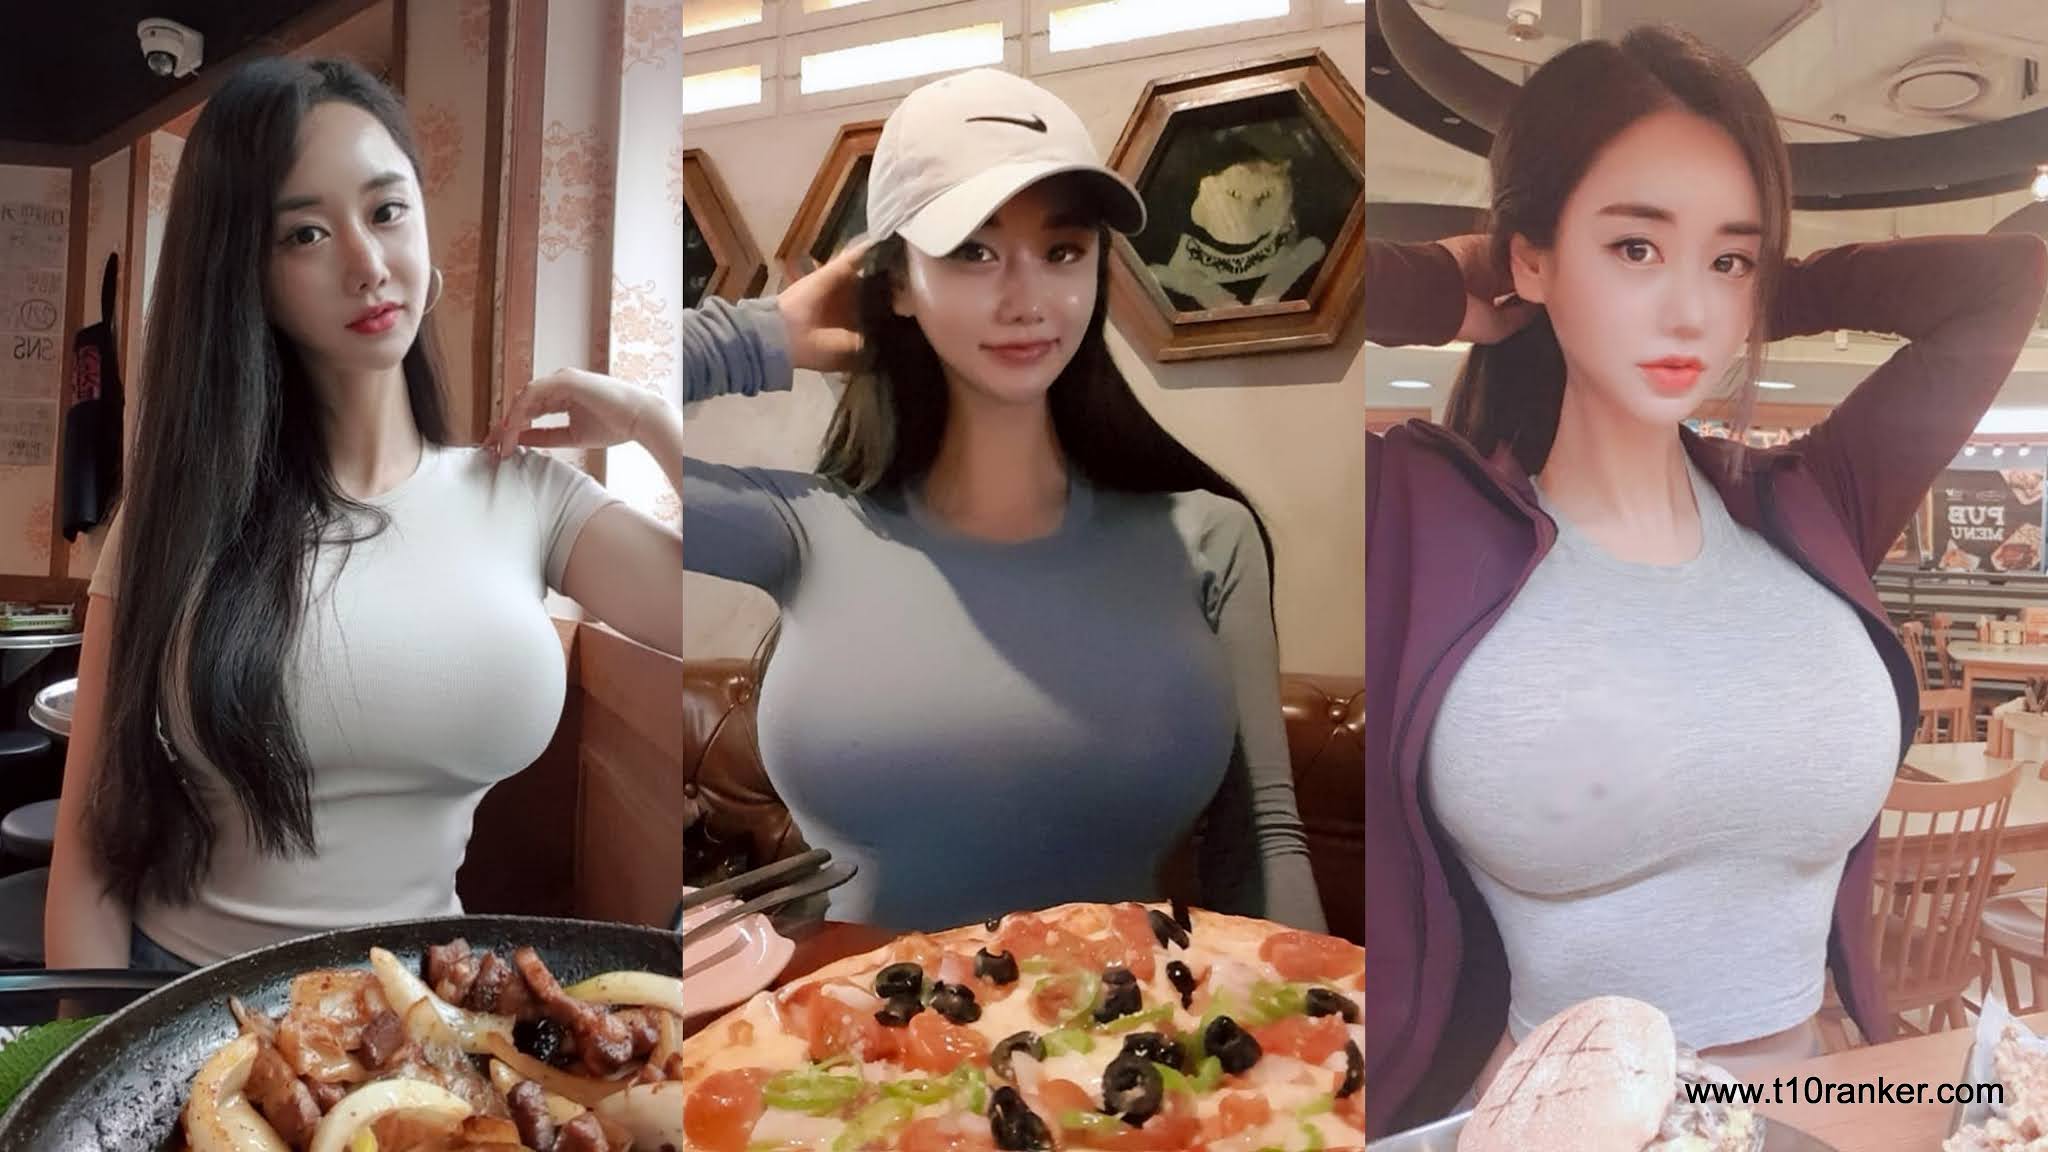 North Korea Big Tits - Top 25 Korean Big Boobs Girls's & Huge Milky Tits Pics of 2021 | Asian Biggest  Breasts full of Milk from Seul, South & North Korea - Top 10 Ranker